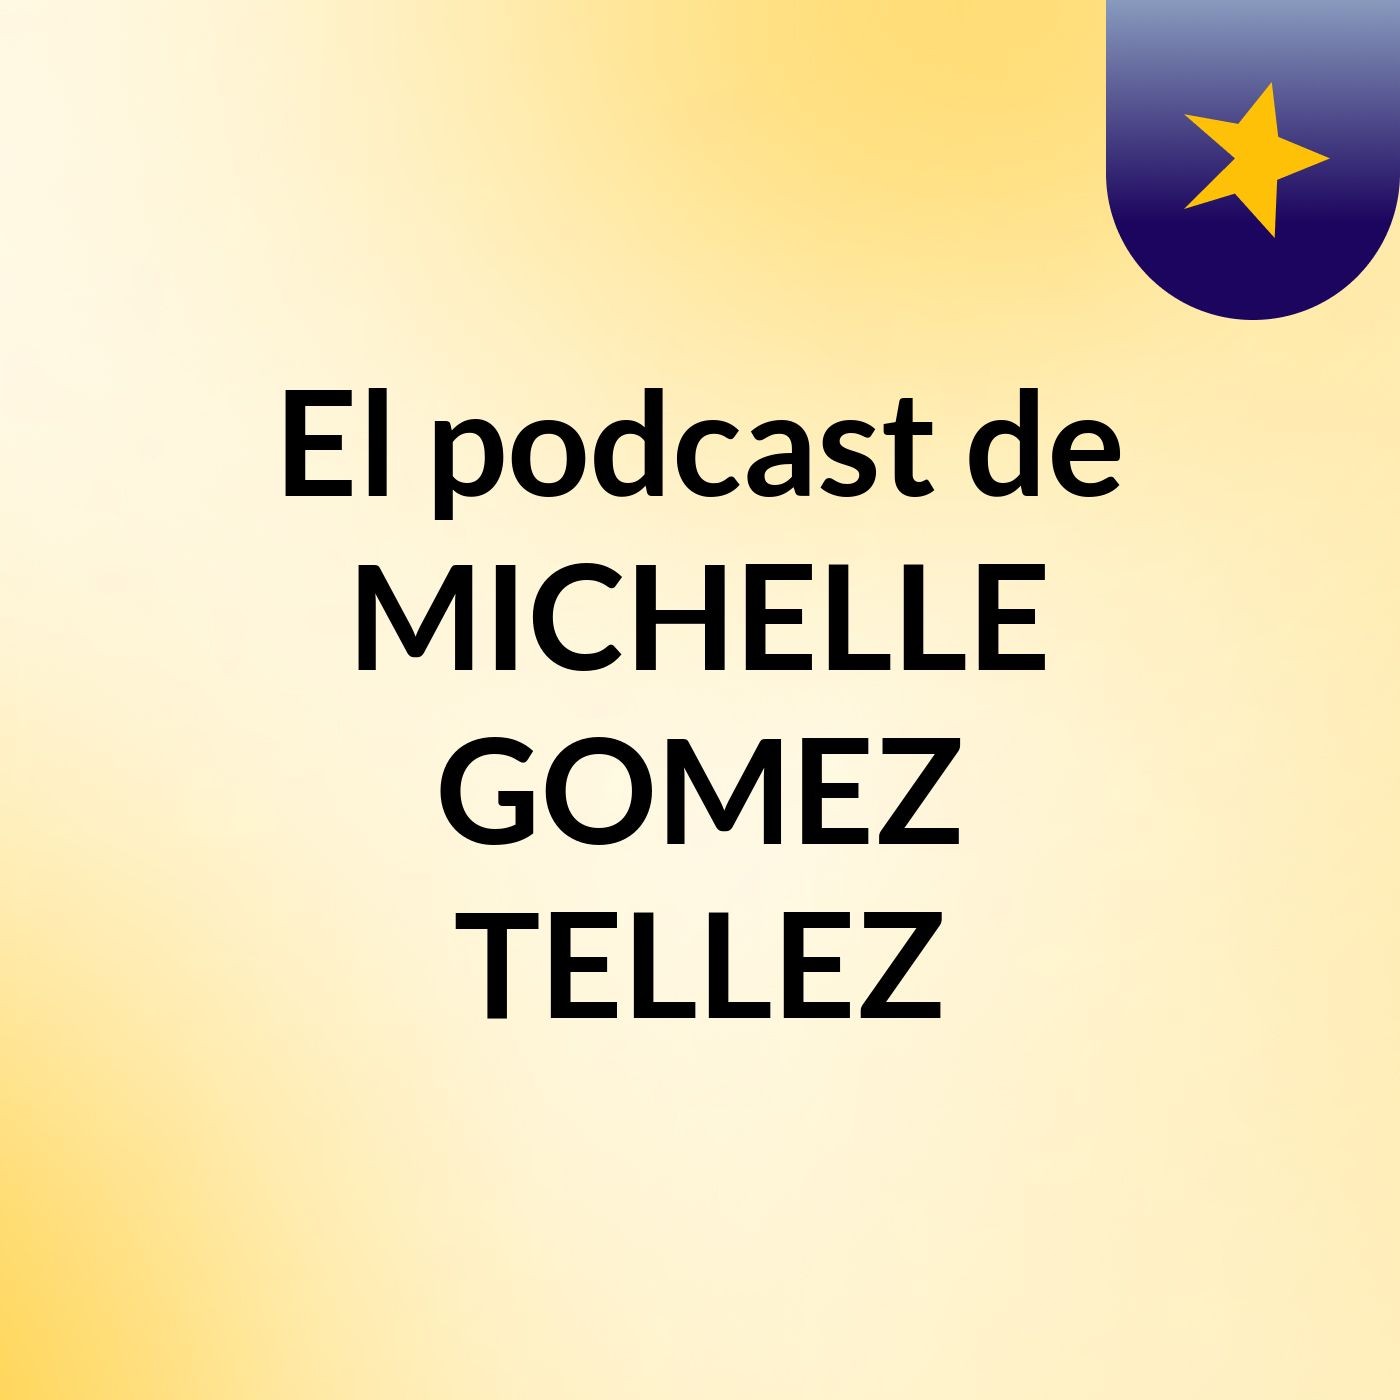 El podcast de MICHELLE GOMEZ TELLEZ